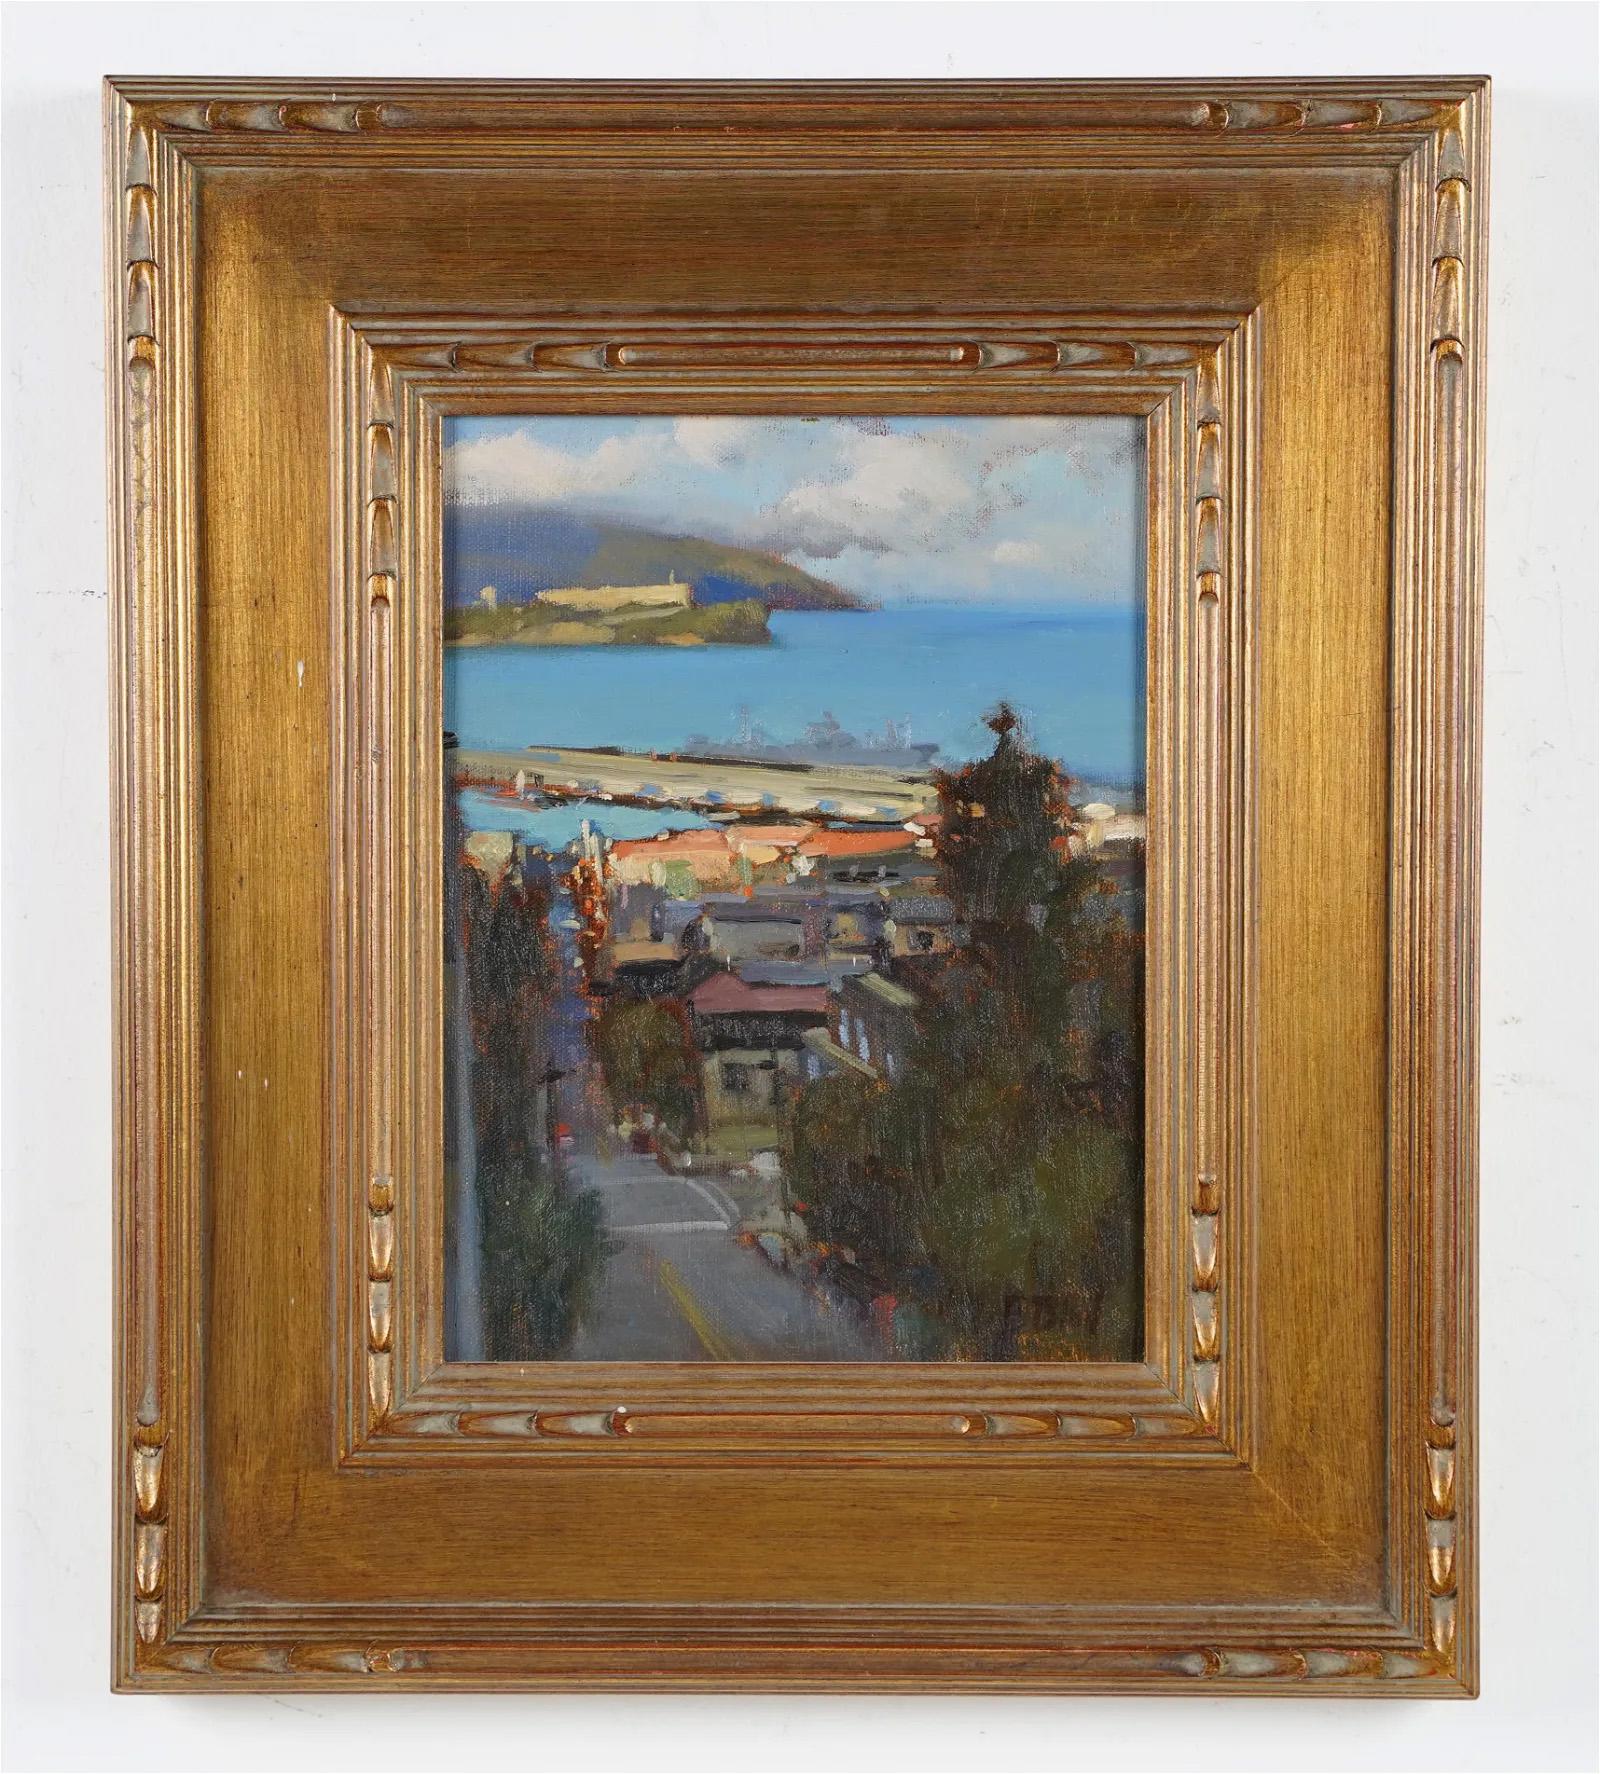 Vintage American School Impressionistisches Vintage-Ölgemälde, San Francisco, Ansicht einer Landschaft, Ölgemälde (Impressionismus), Painting, von Brian Blood